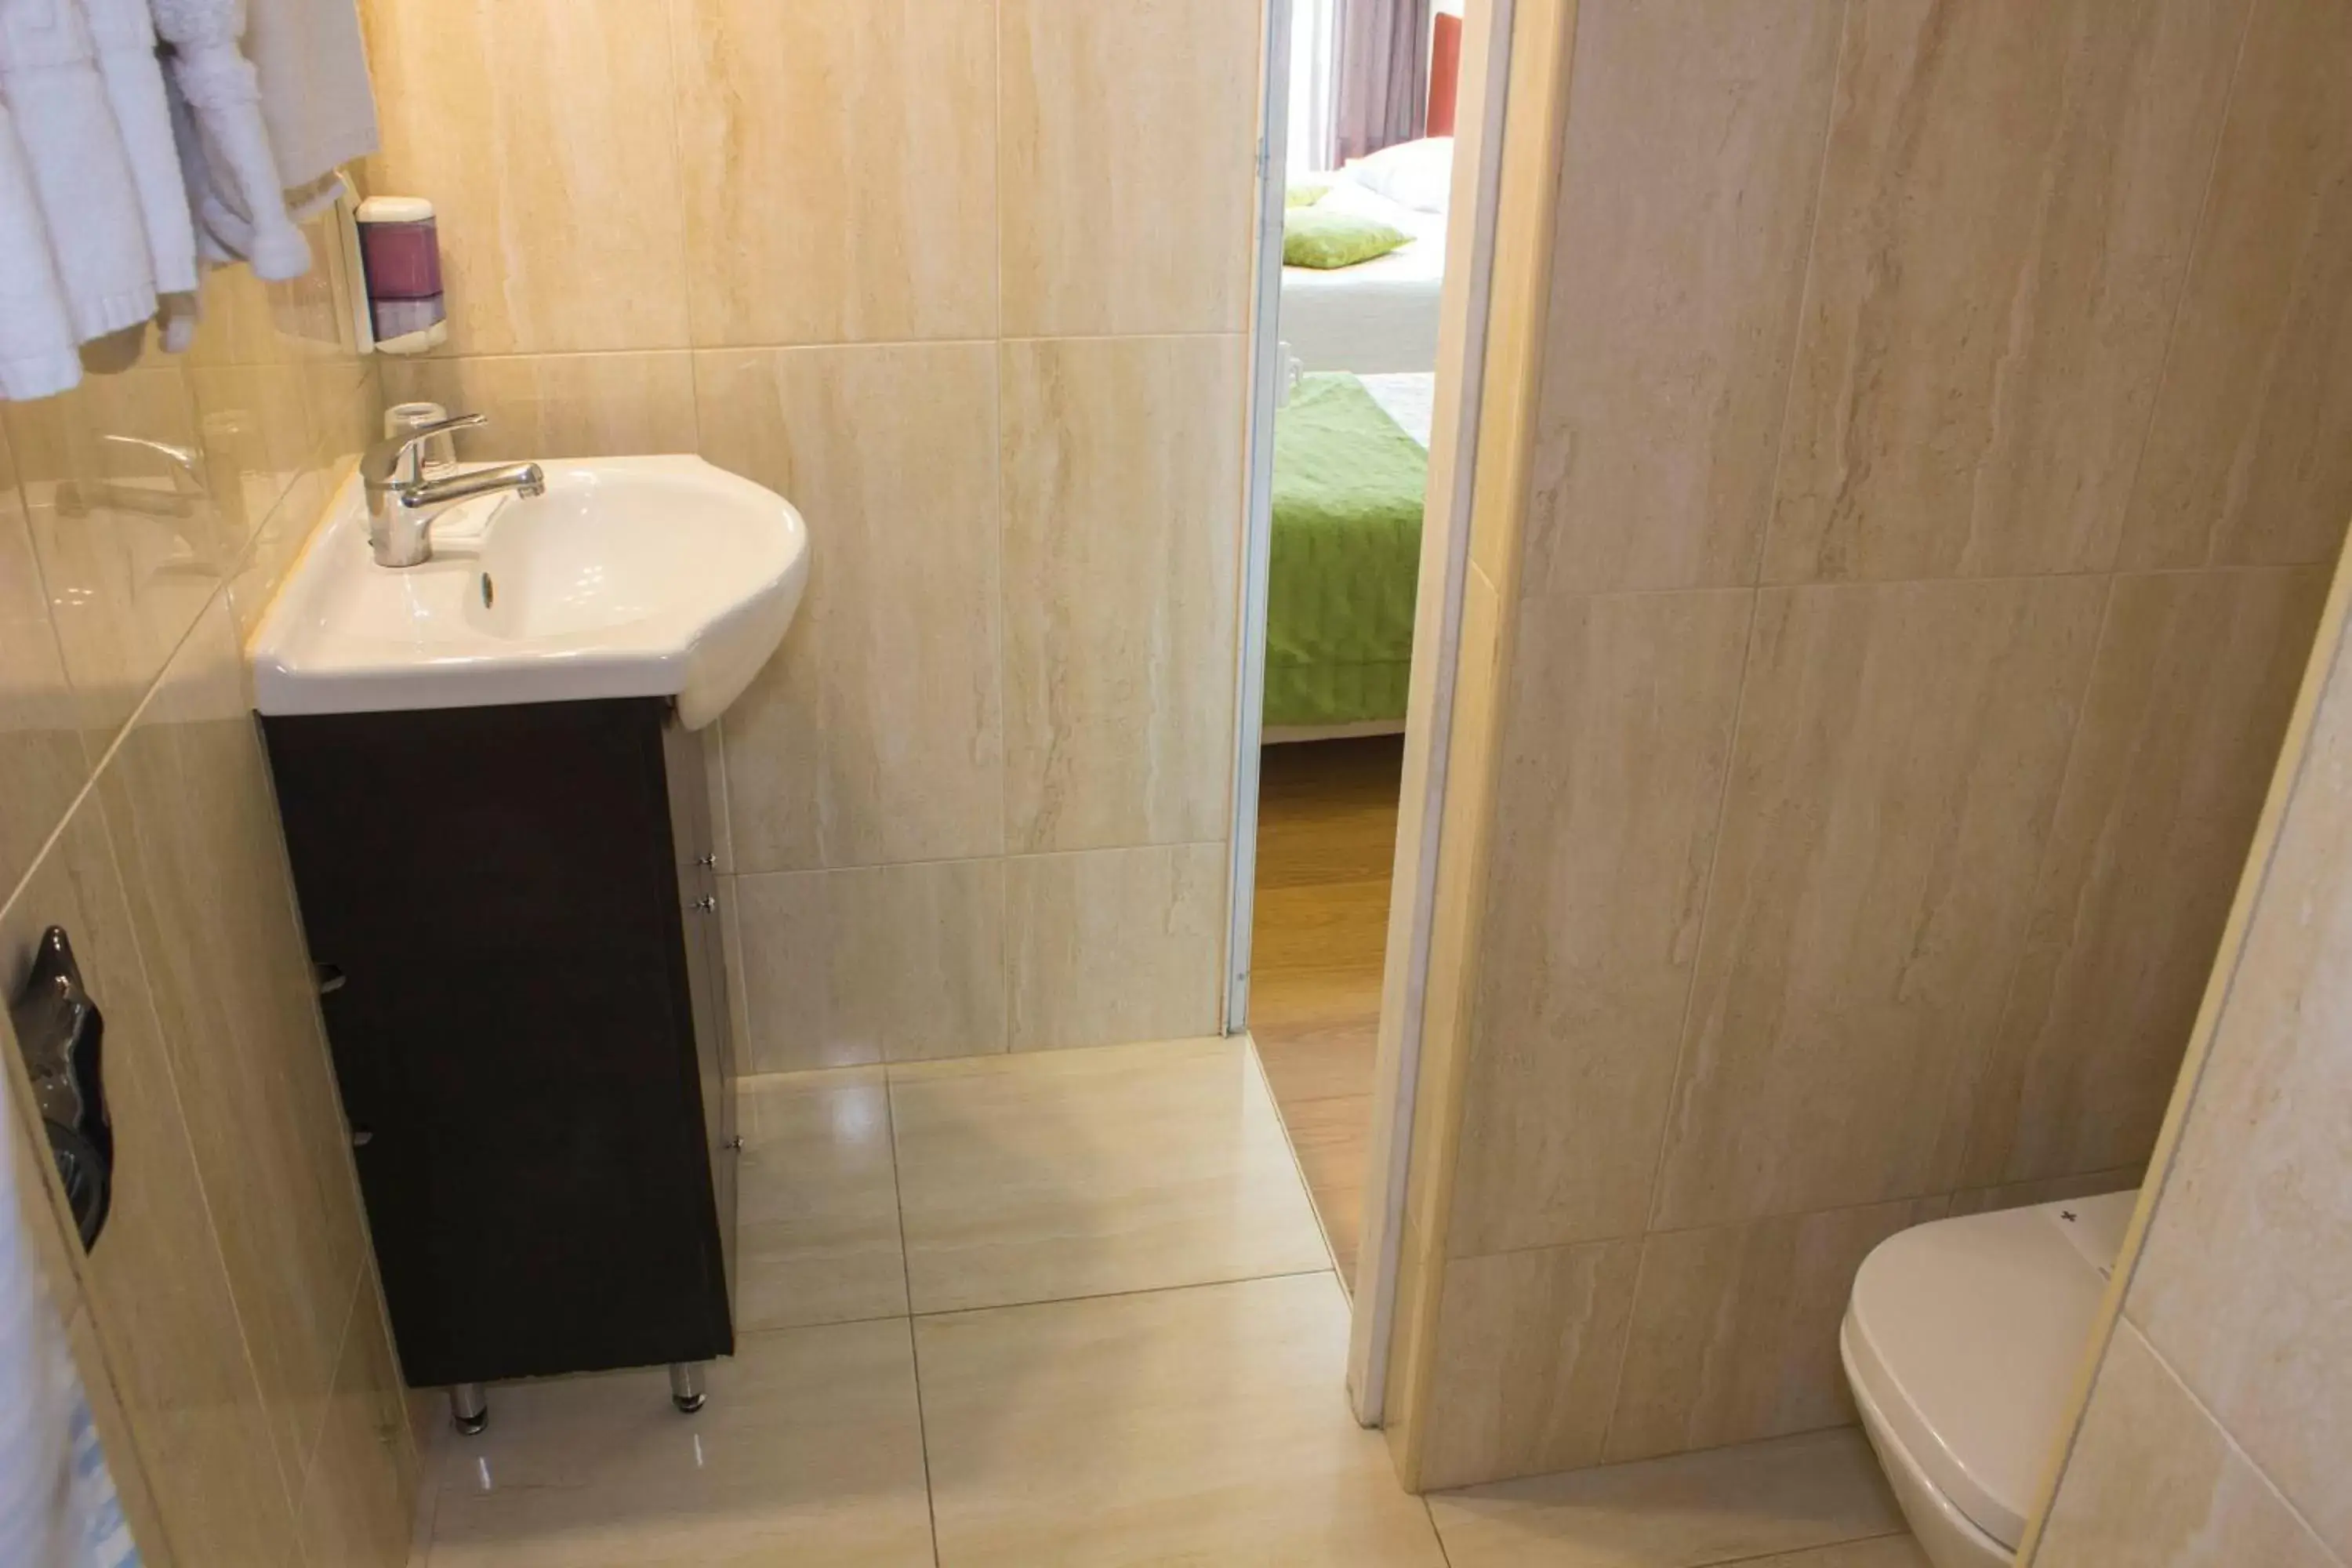 Bathroom in Hotel Estoril Porto